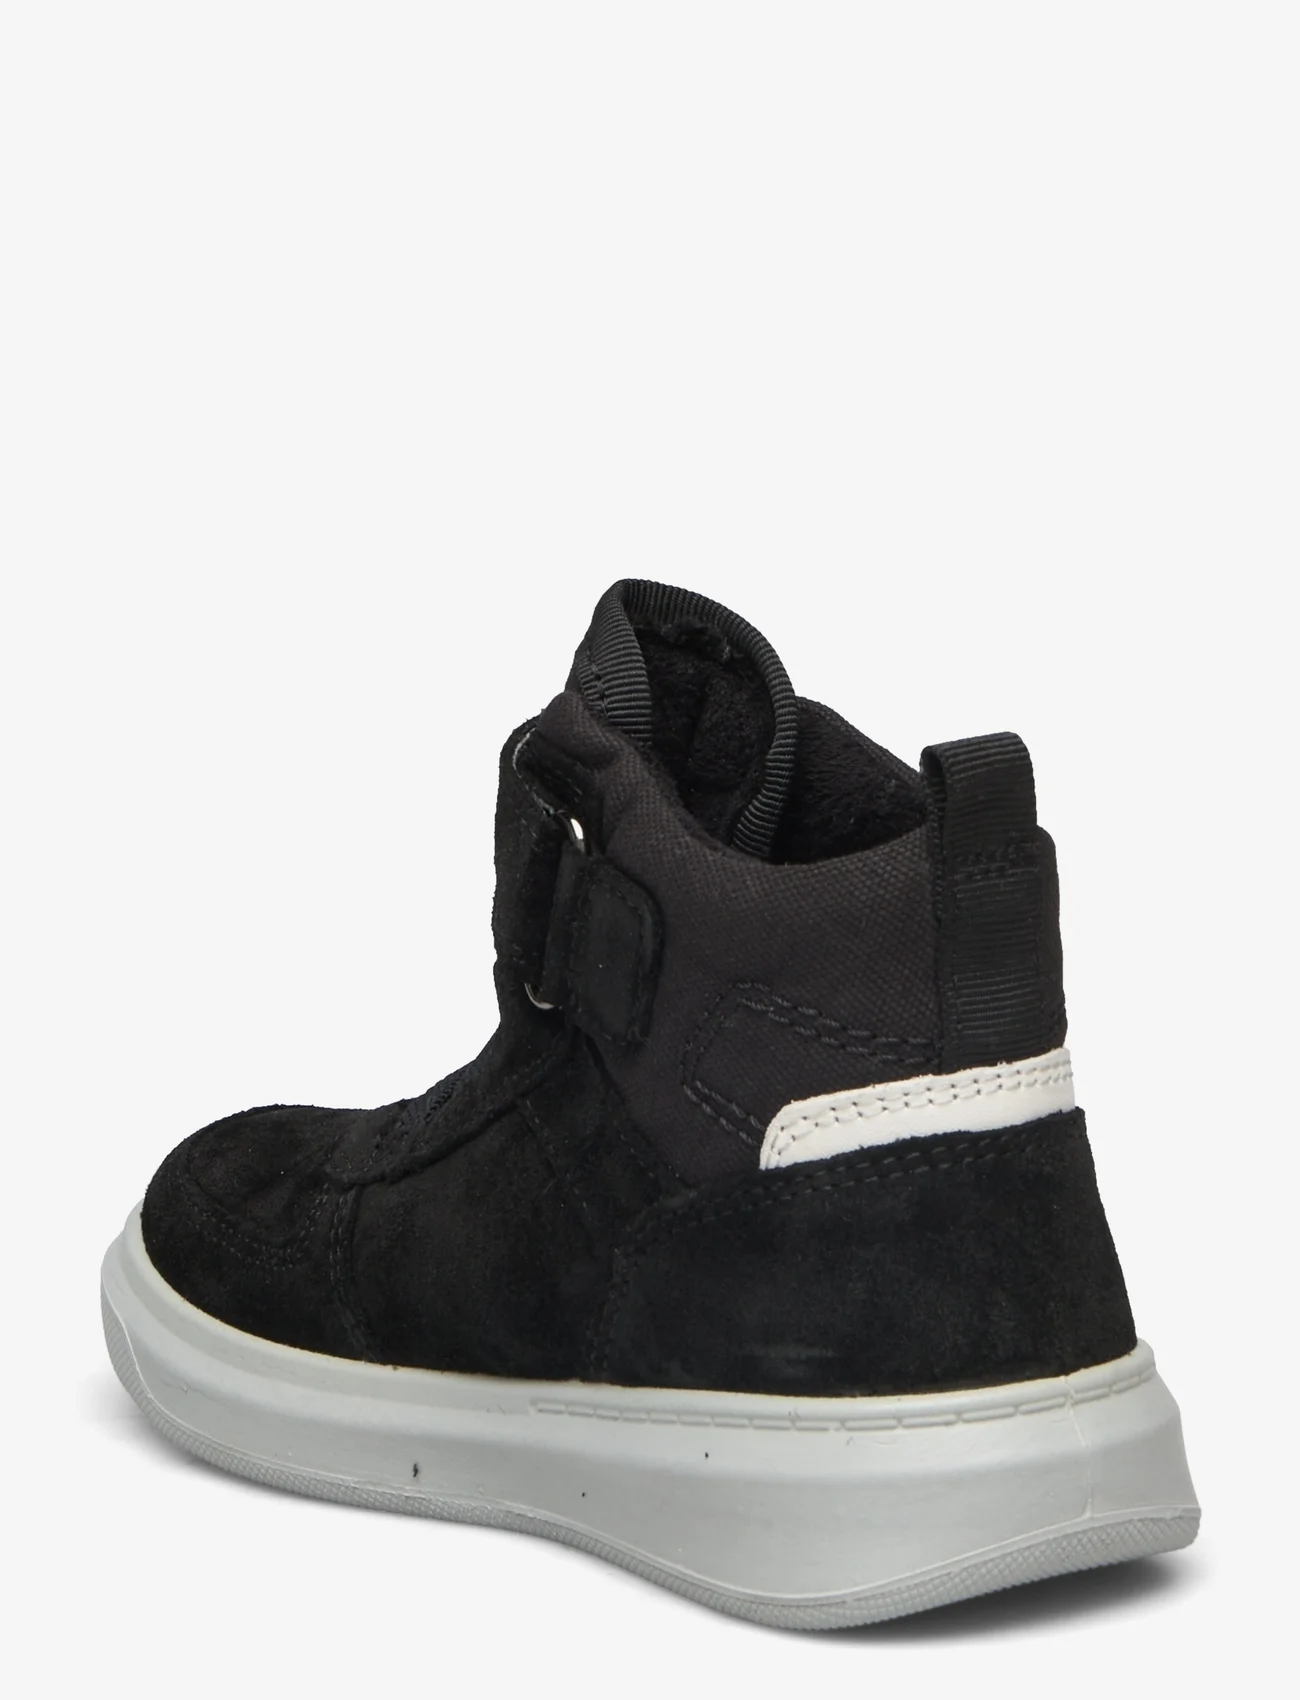 Superfit - COSMO - hoge sneakers - black - 1